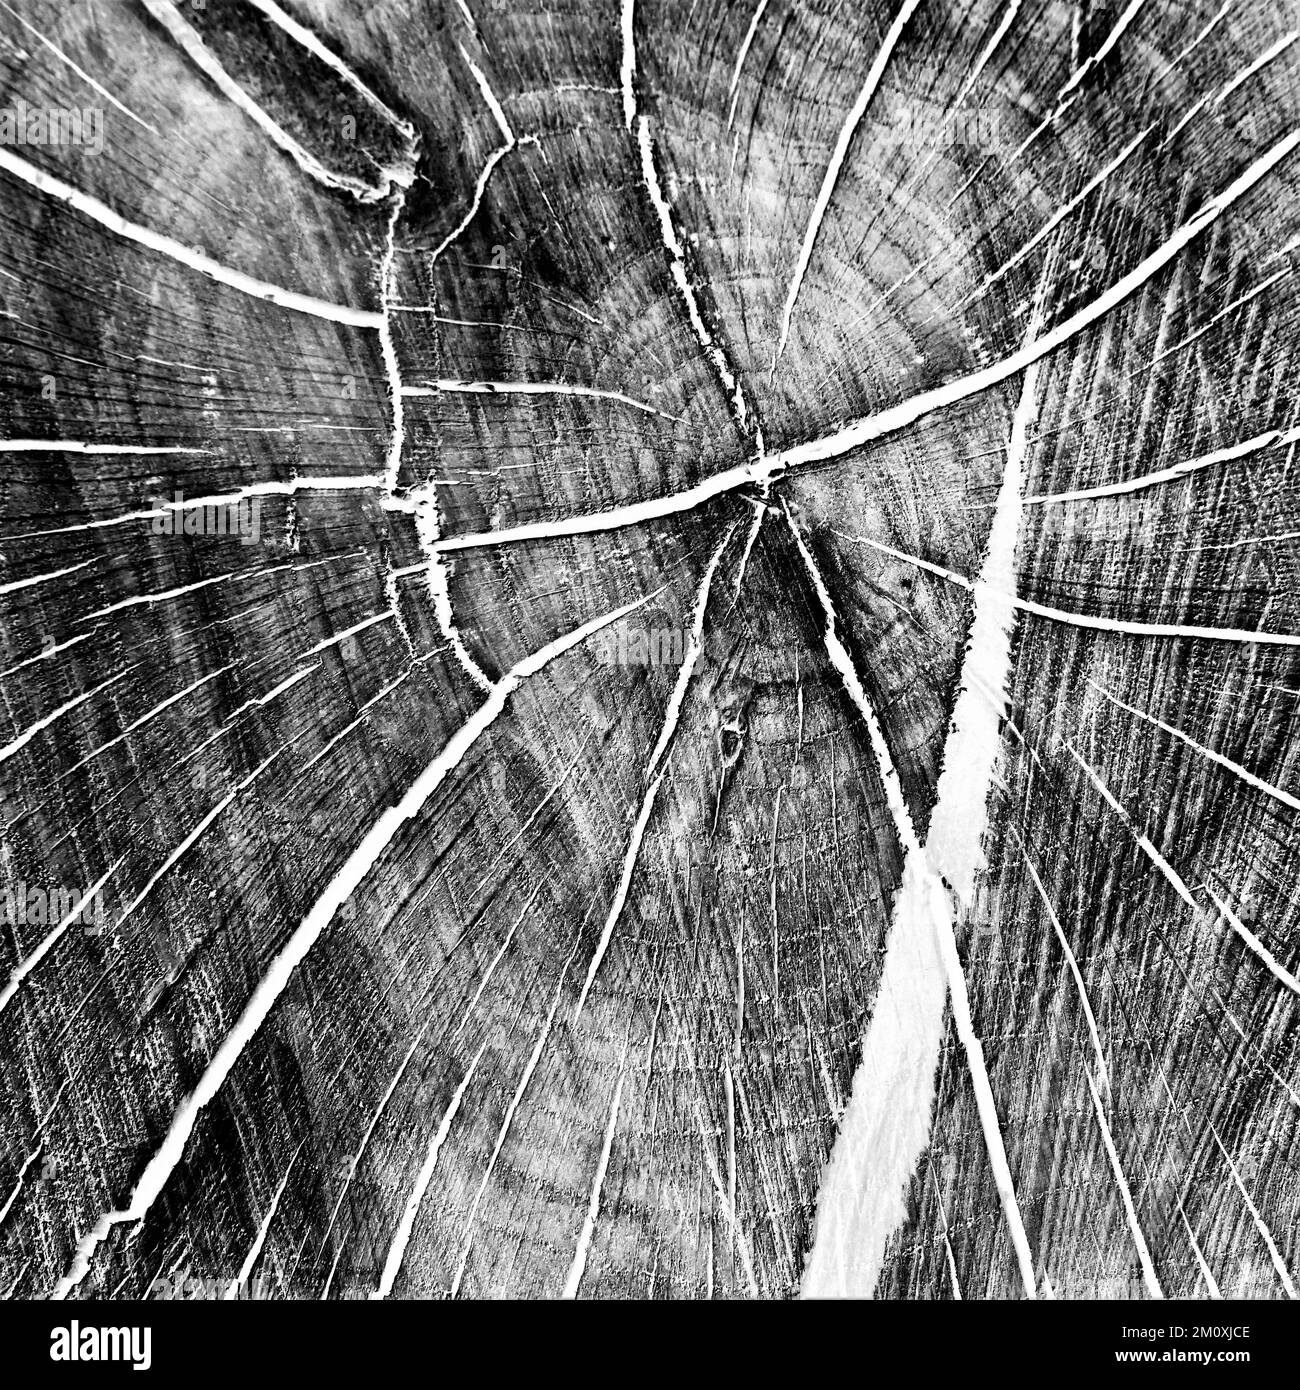 Abstract tavolozza limitata di colore attenuato fotografia di dettaglio naturale delle basi di ceppo albero nella foresta di Cannock Chase Foto Stock